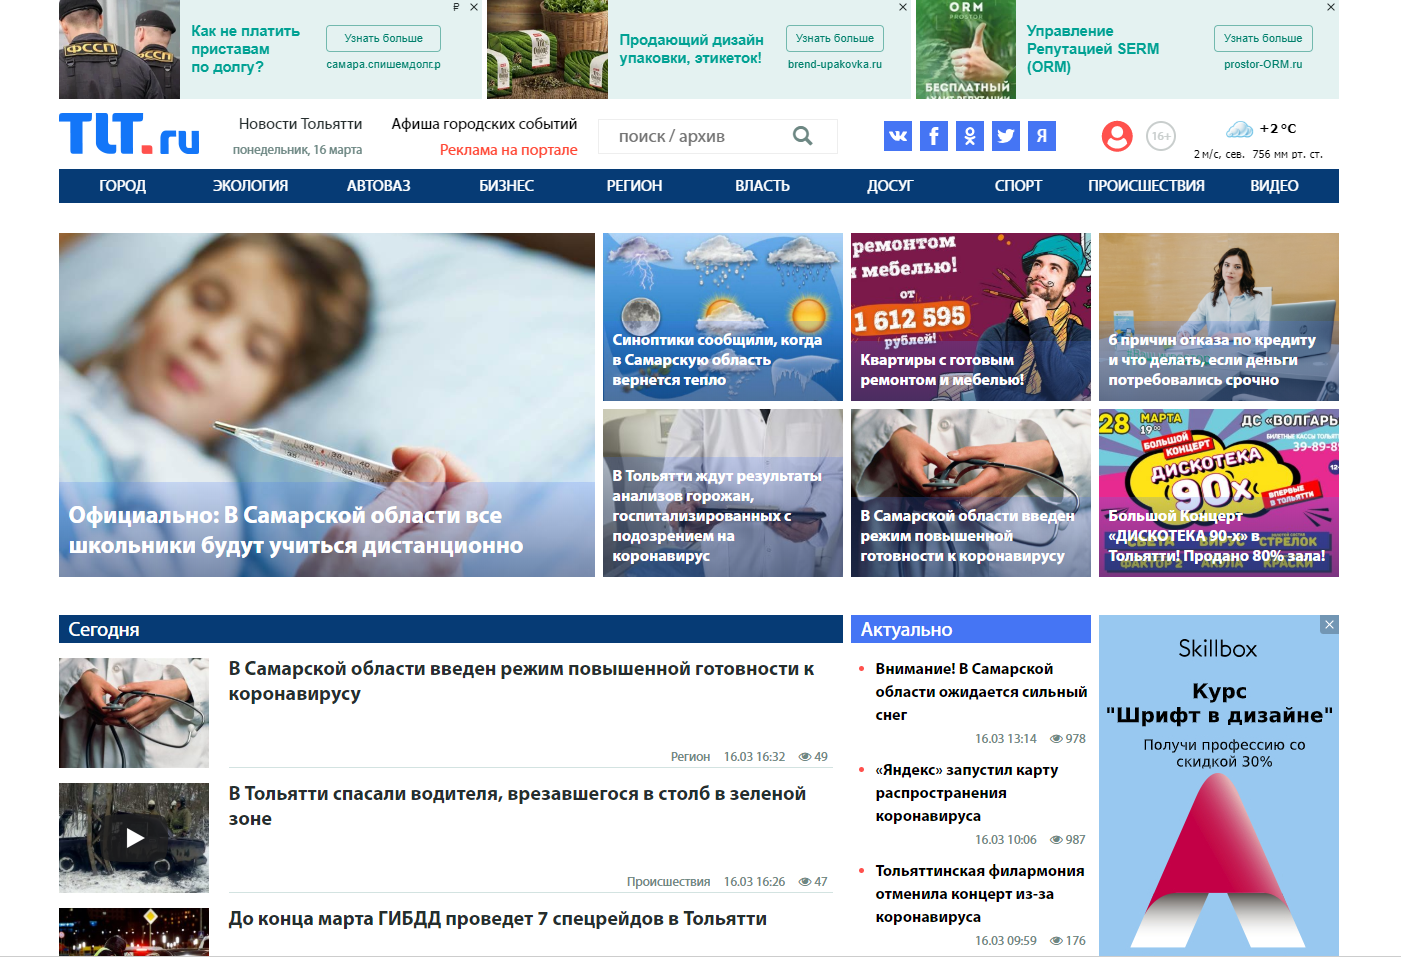 Вид старой версии дизайна главной страницы портала TLT.ru